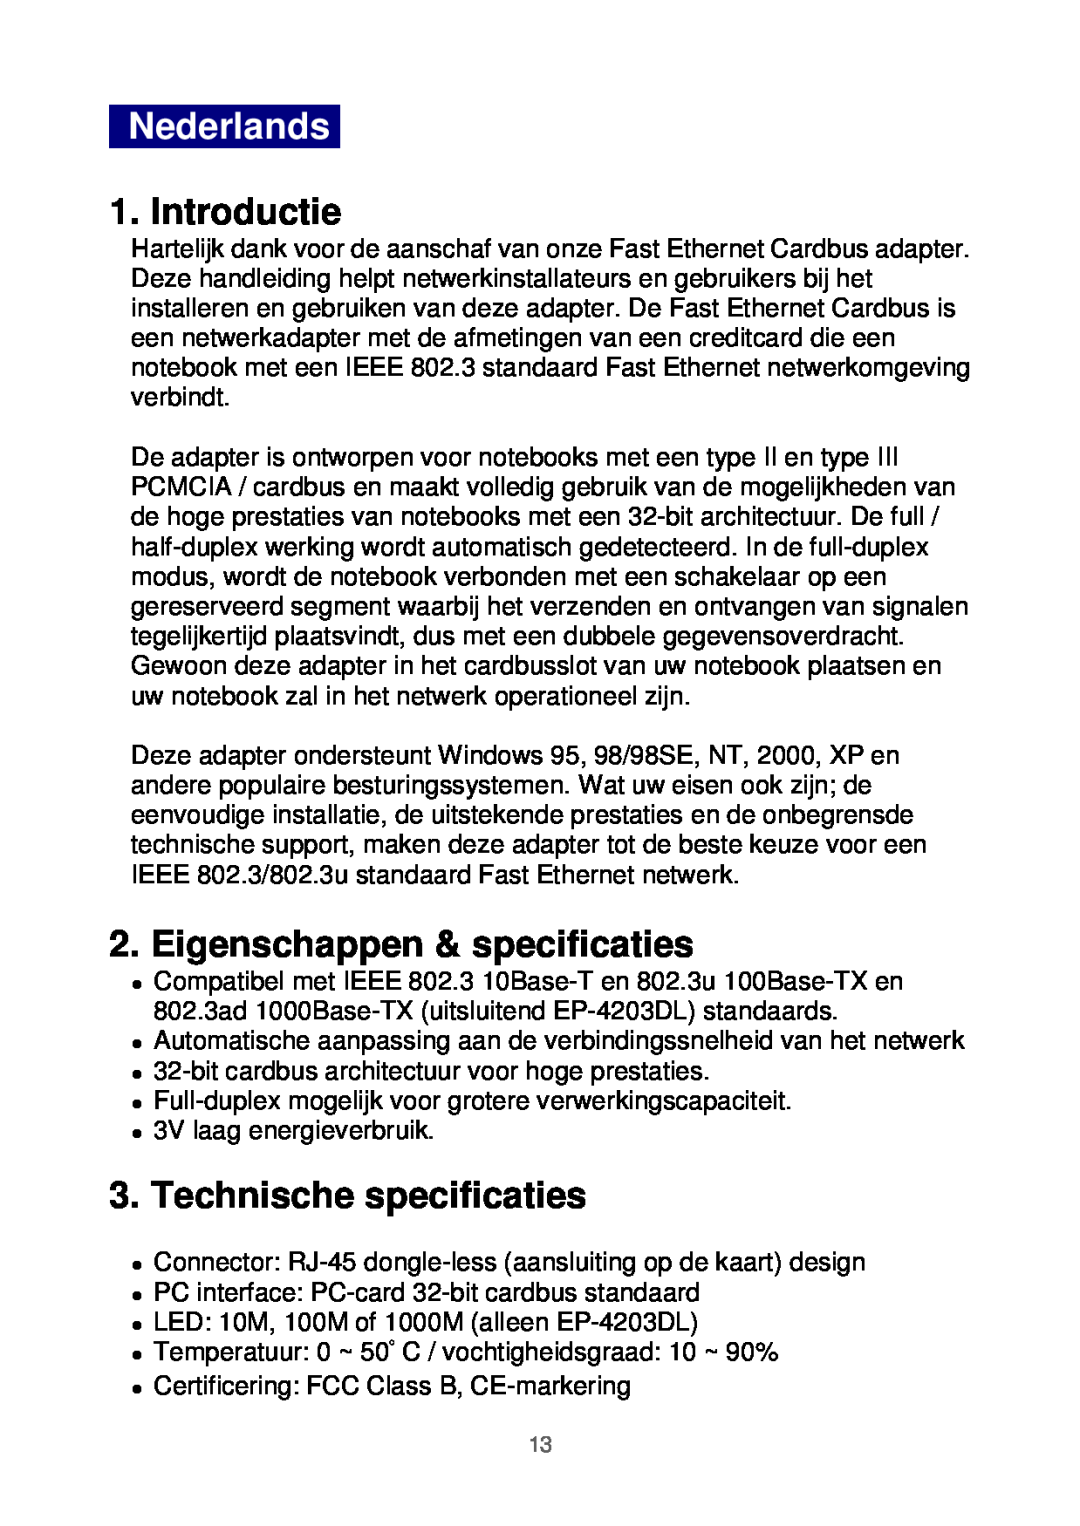 Edimax Technology Ethernet Cardbus Adapter manual Nederlands, Introductie, Eigenschappen & specificaties 